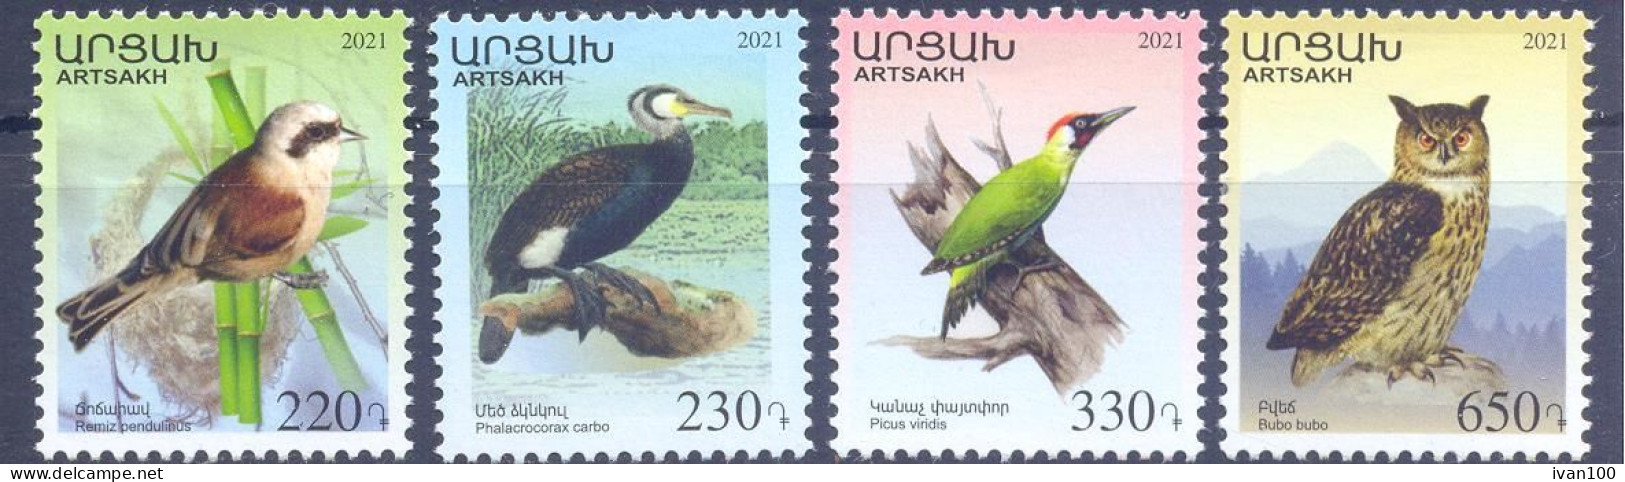 2021. Mountainous Karabakh, Birds Of Karabakh, 4v Perforated,  Mint/** - Armenië